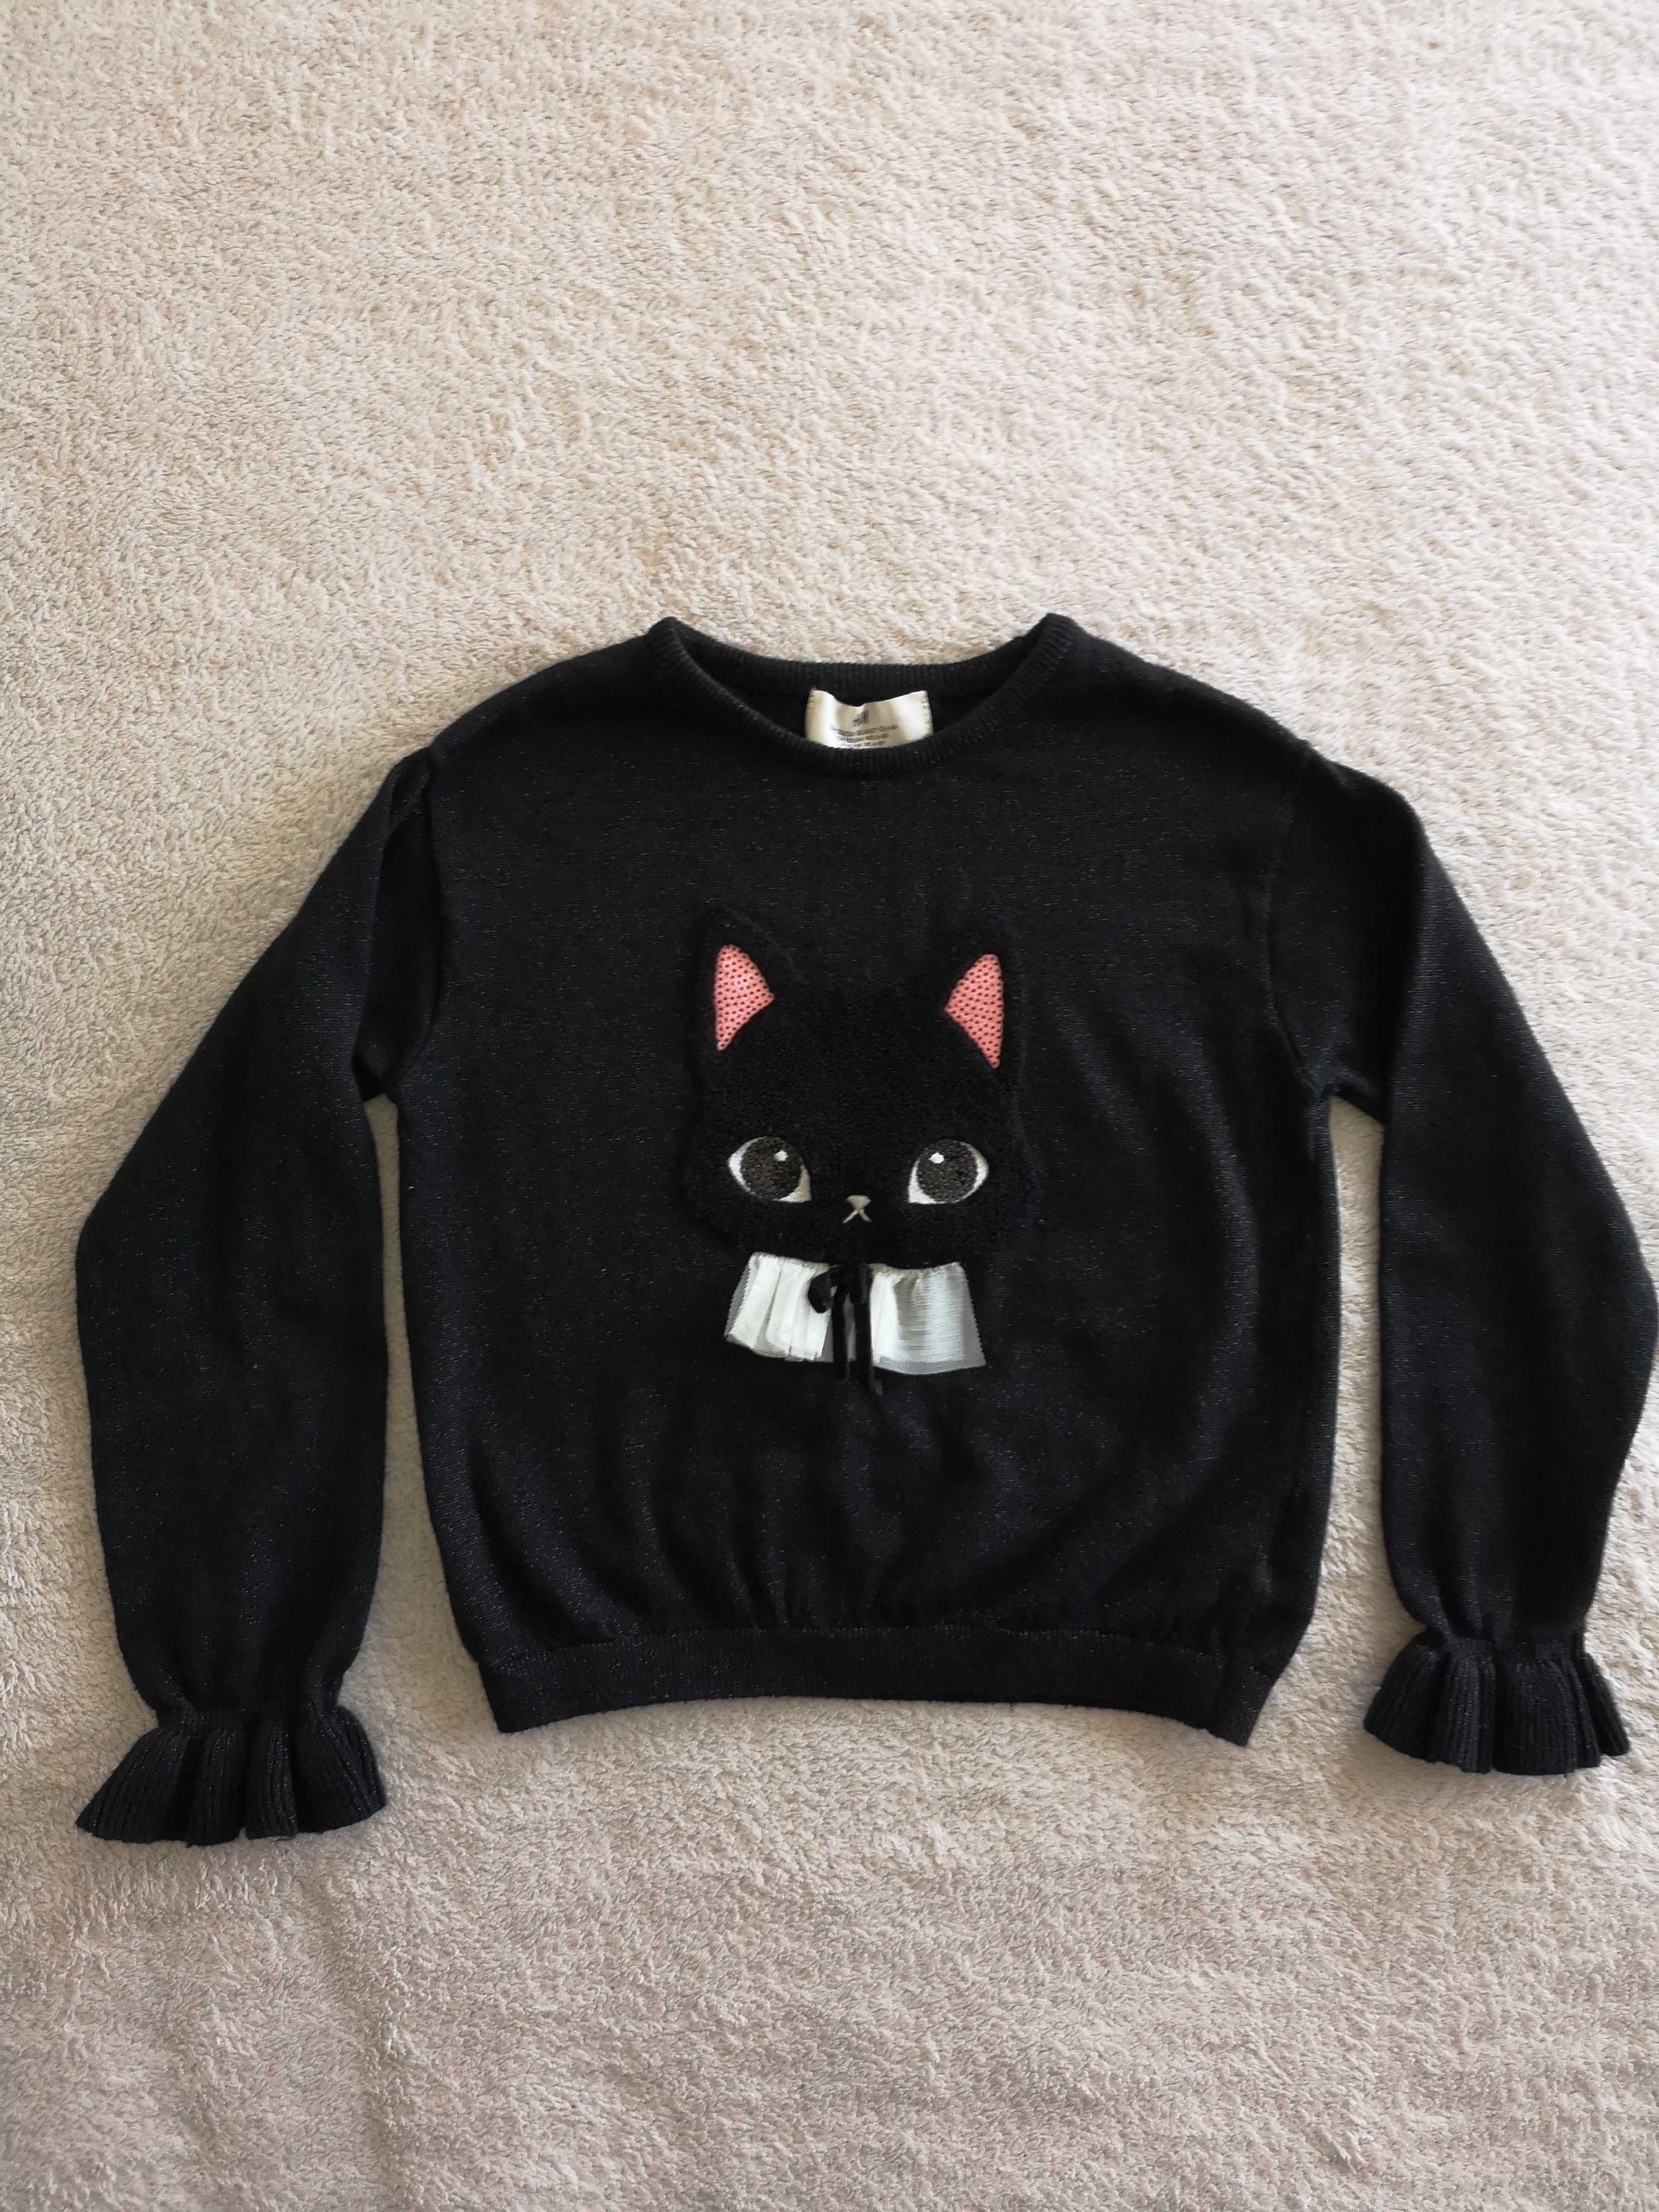 Czarny elegancki błyszczący sweter w kota kot 3d H&M 122 - 128 j nowy